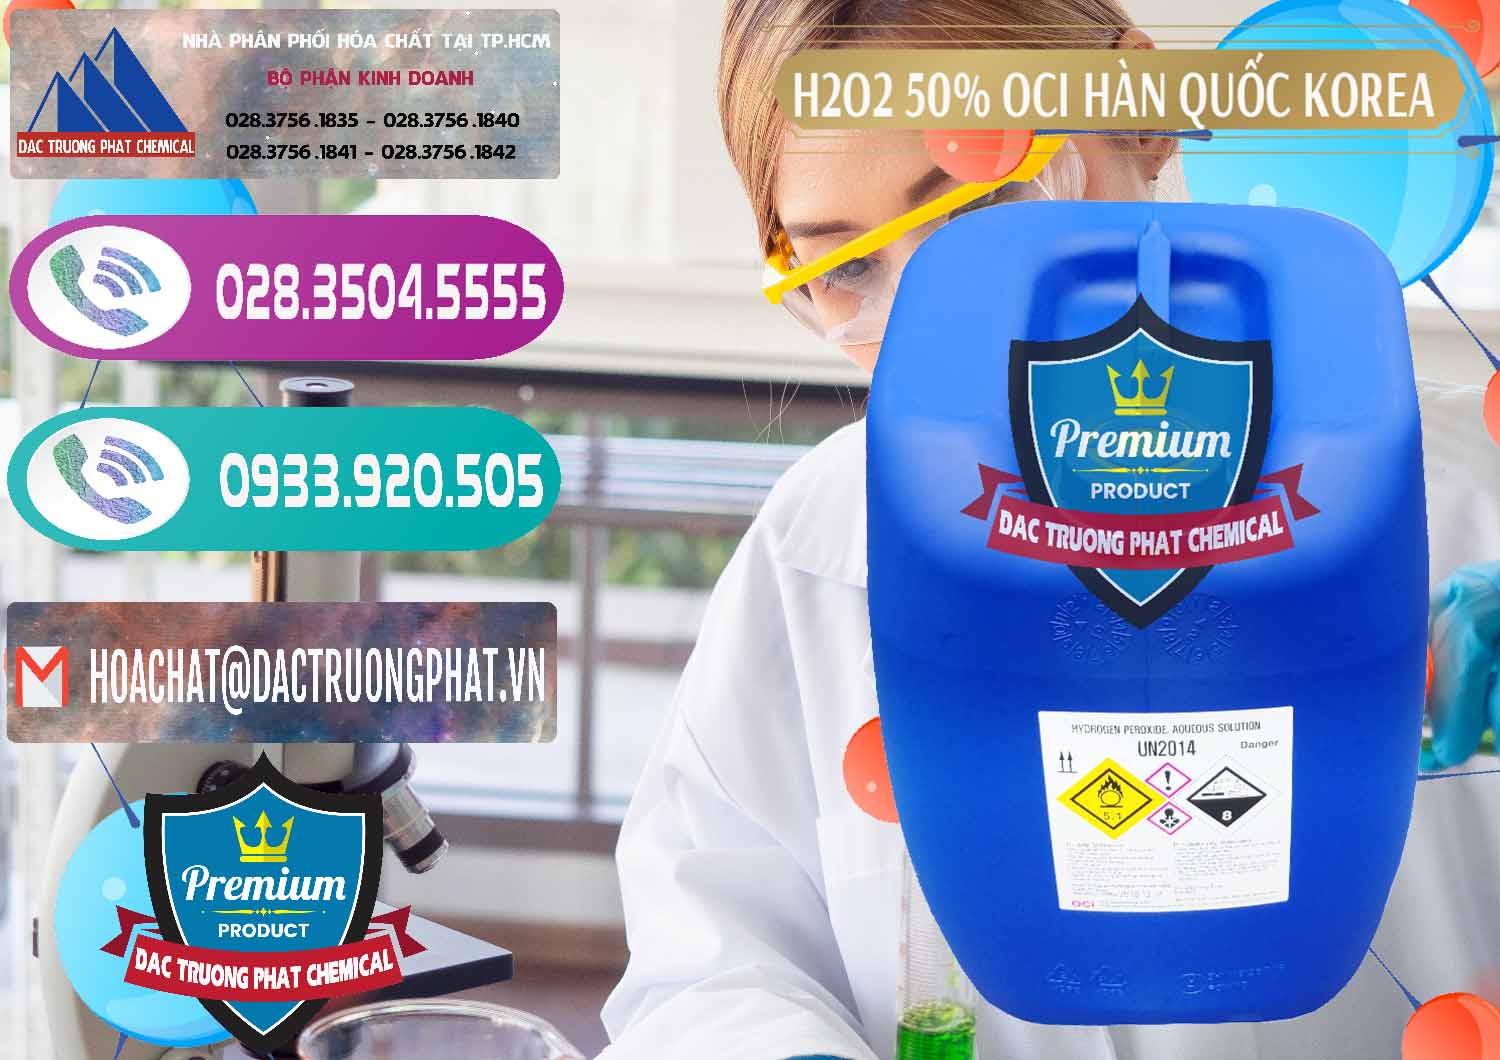 Cty chuyên kinh doanh _ bán H2O2 - Hydrogen Peroxide 50% OCI Hàn Quốc Korea - 0075 - Nơi phân phối _ nhập khẩu hóa chất tại TP.HCM - hoachatxulynuoc.com